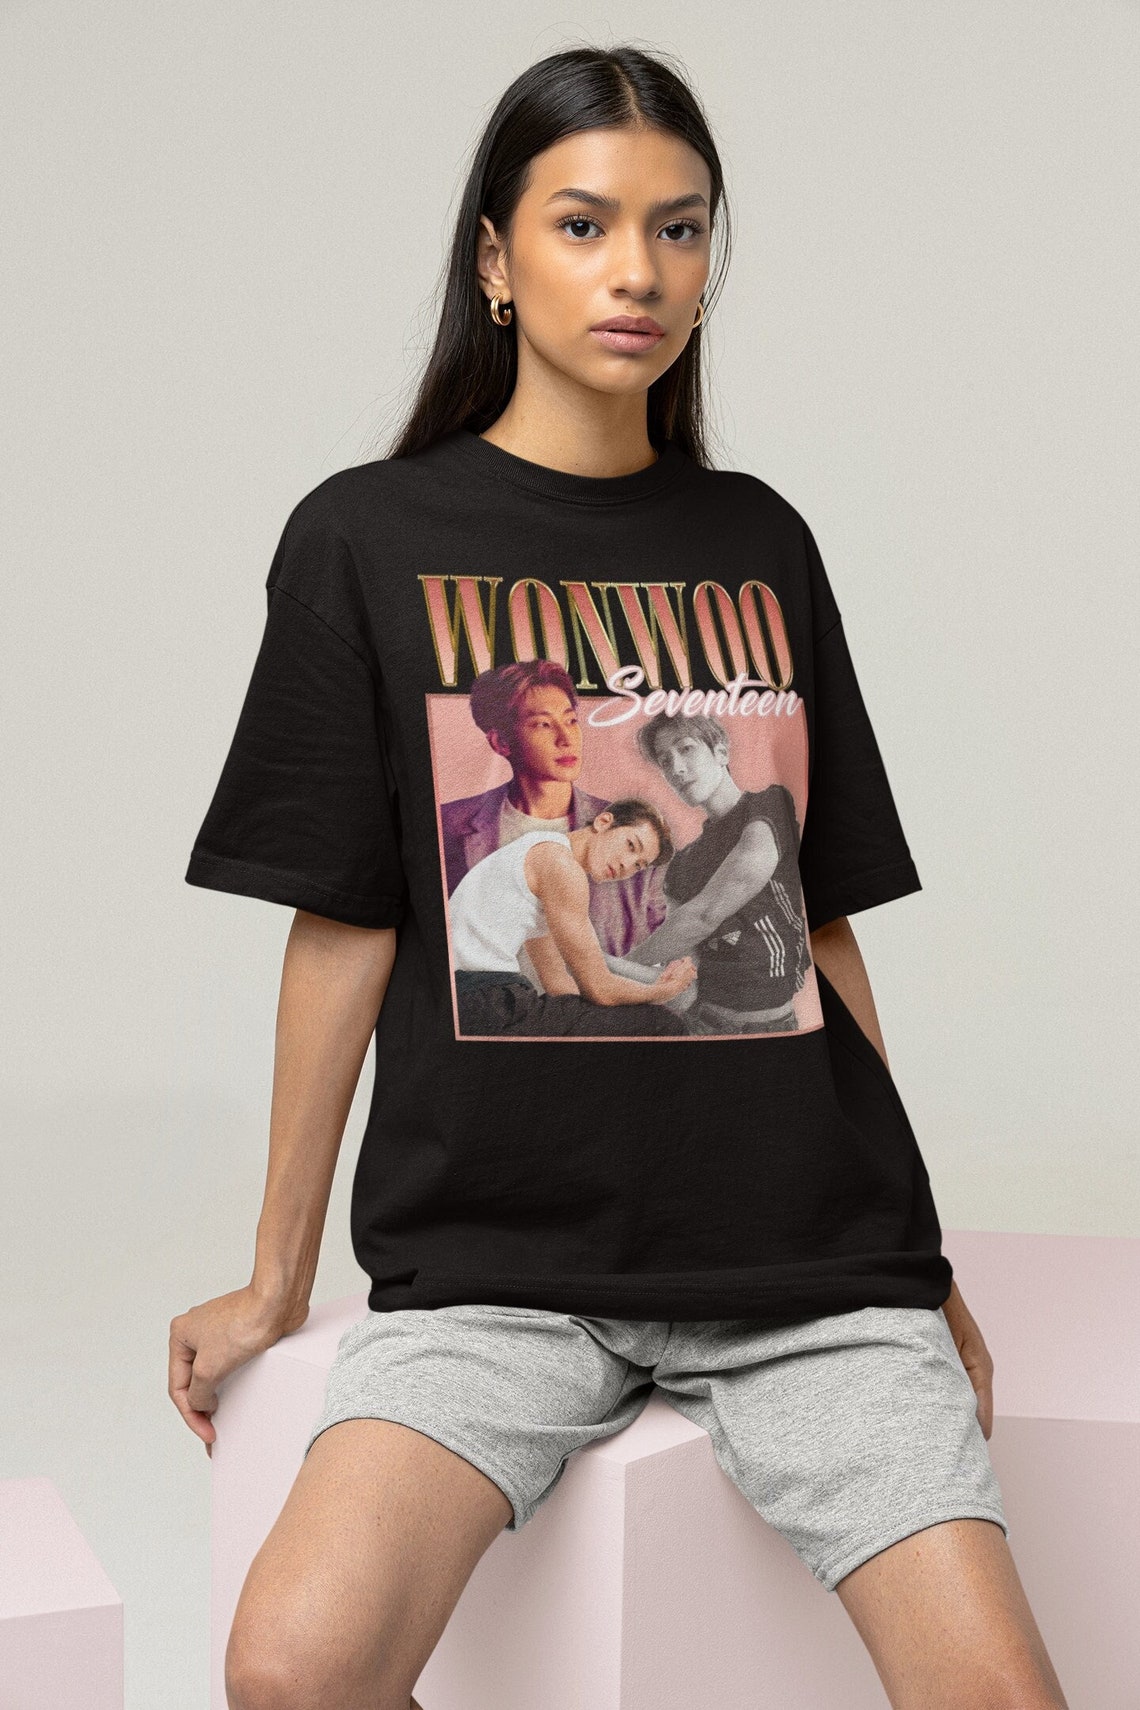 Seventeen Wonwoo Retro Bootleg T-shirt Seventeen Shirt Kpop - Etsy